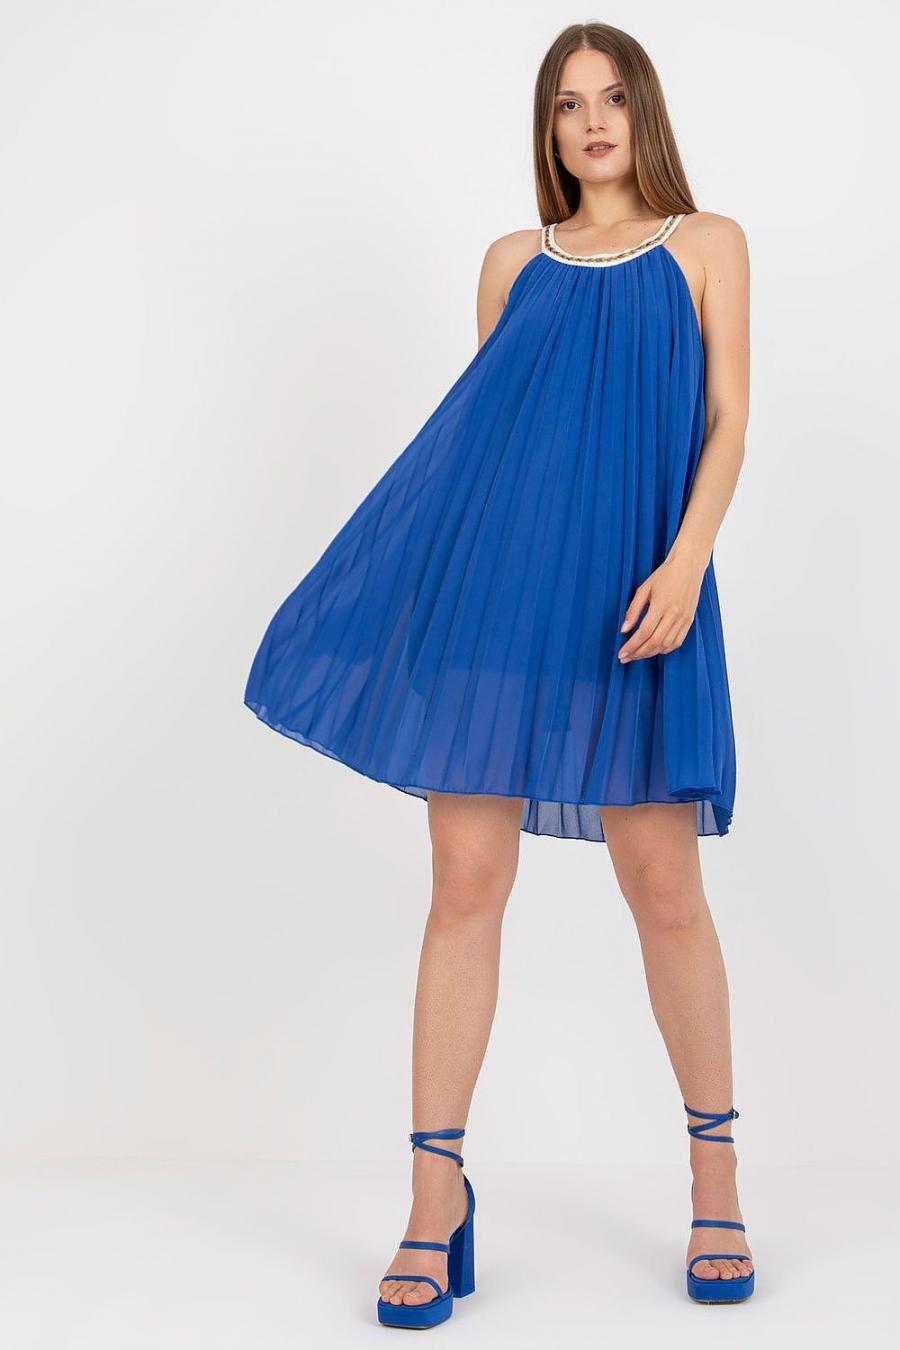 Ostatní značky šaty dámské 167571 - Modrá